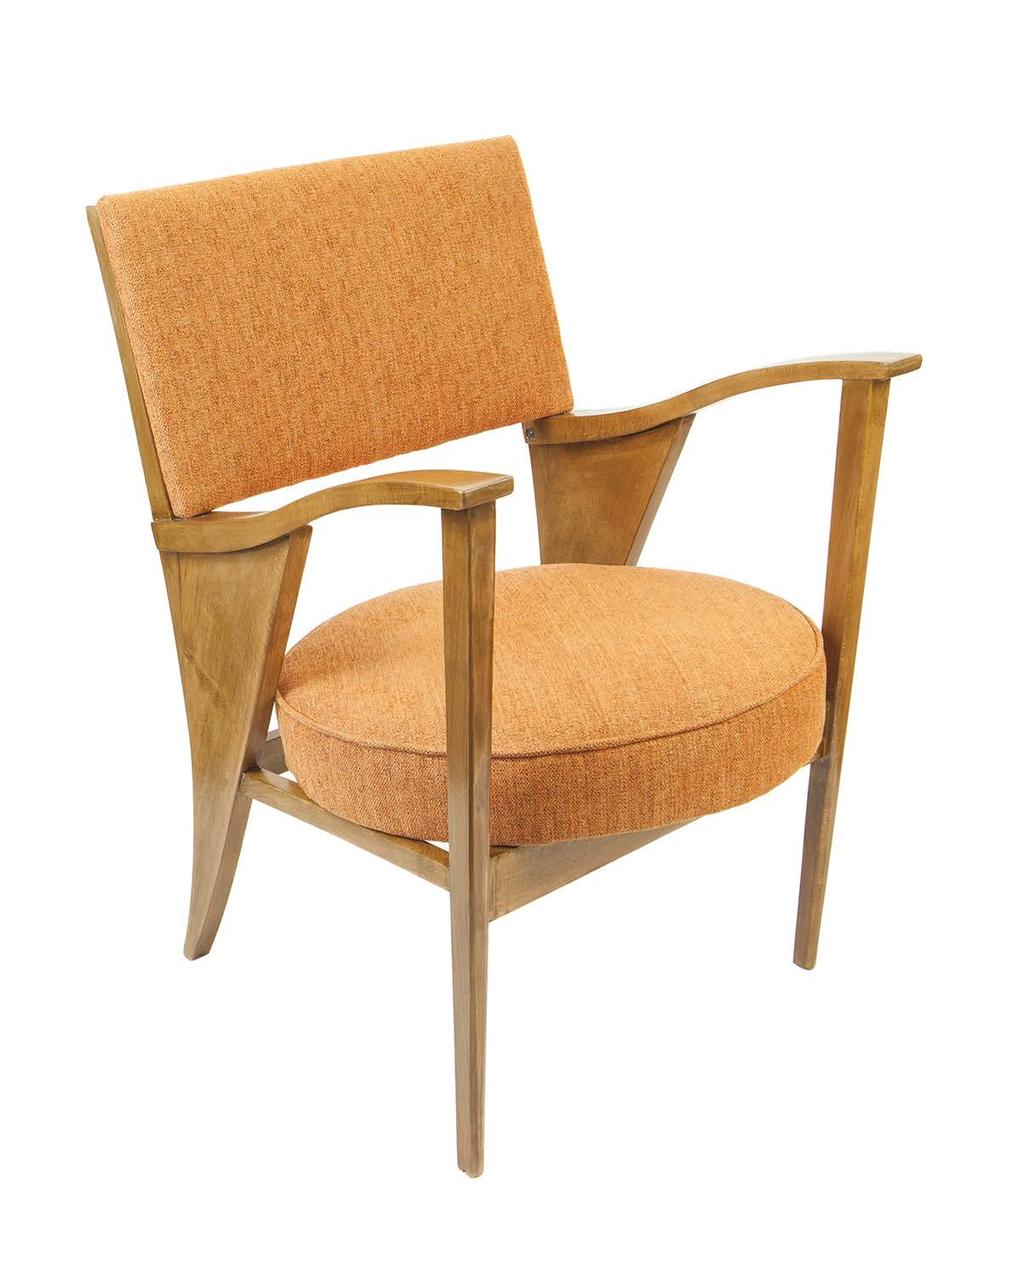 4 2. Fotel tapicerowany typ 365 proj. Kintopf, 1960; Swarzędzka Fabryka Krzeseł w Swarzędzu, lata 60. XX w.